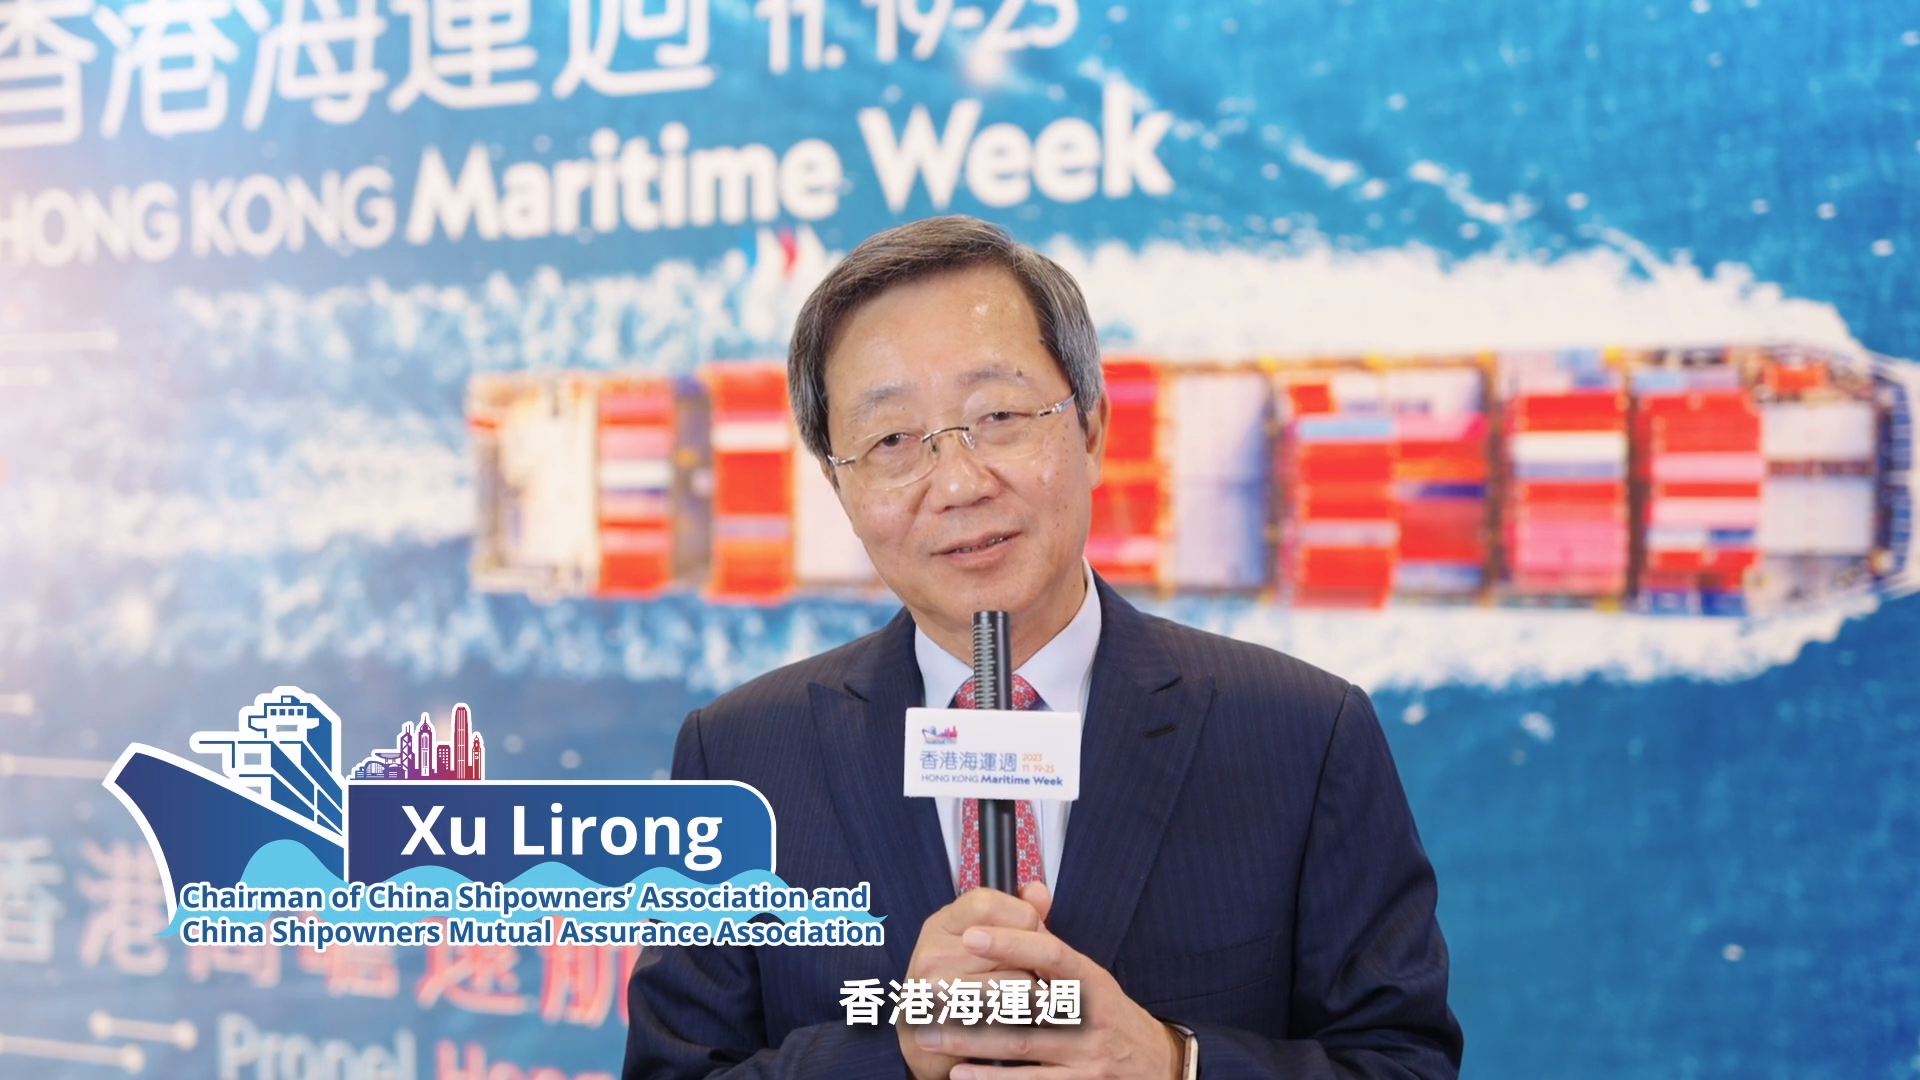 香港海运周2023 - 中国船东协会会长和中国船东互保协会董事长许立荣船长